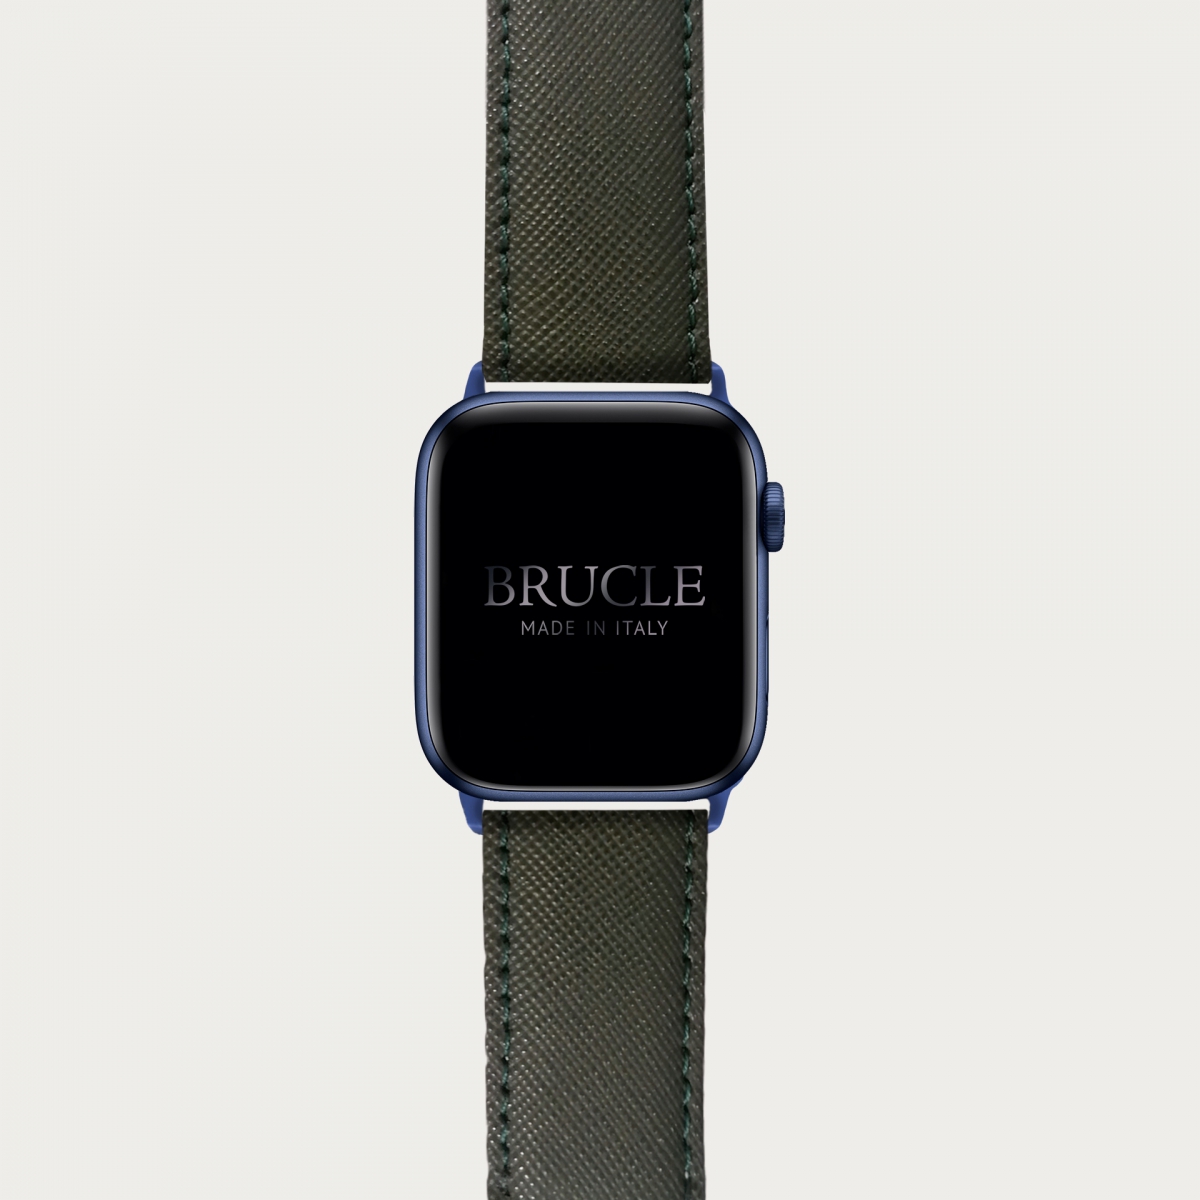 Correa de reloj compatible con Apple Watch / Samsung smartwatch, verde militar Saffiano